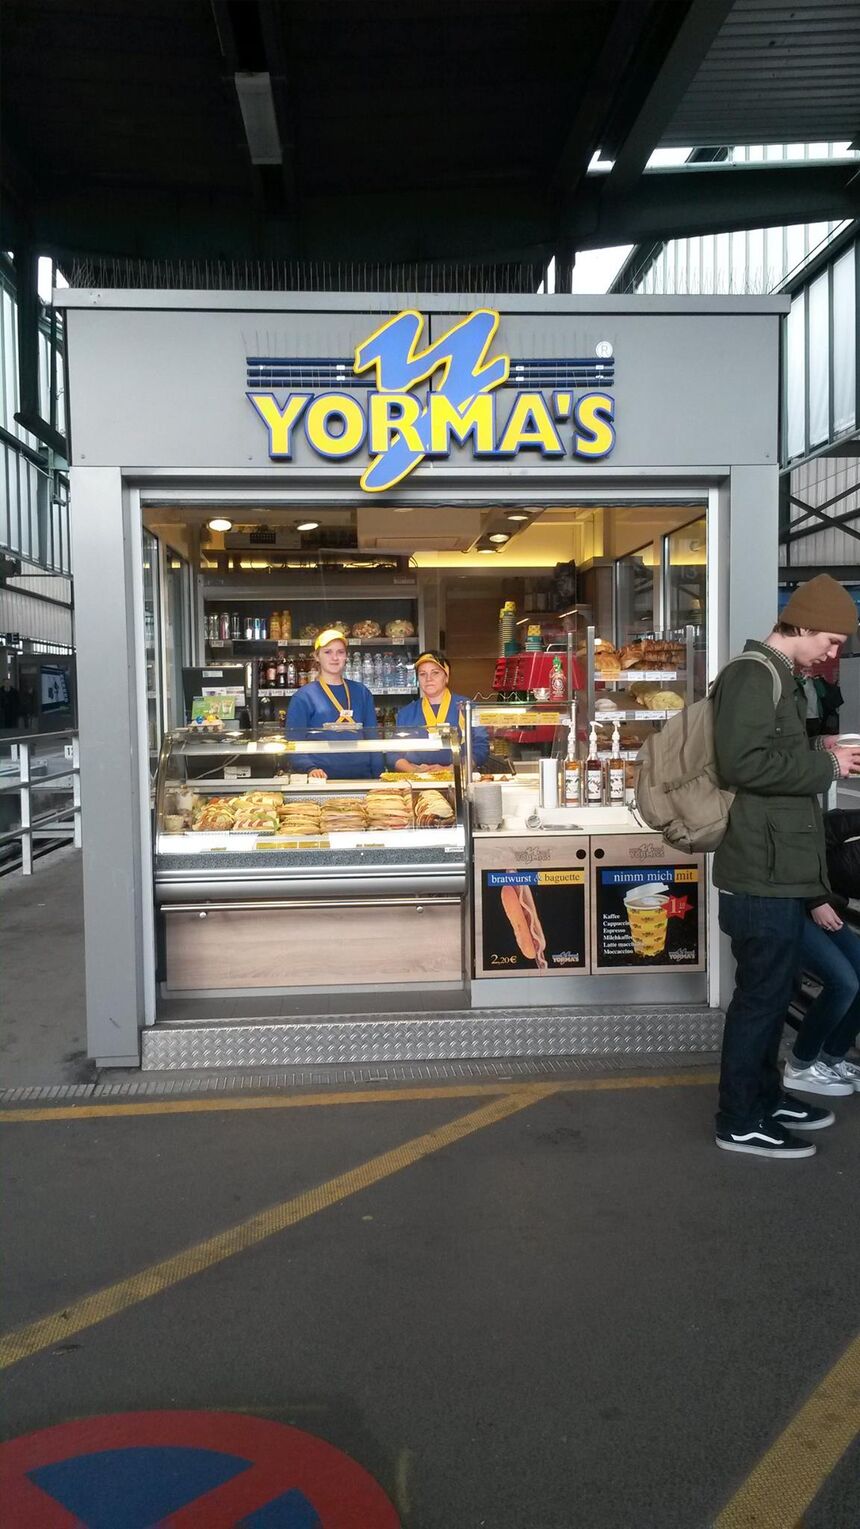 Yorma's, Stuttgart Kiosk